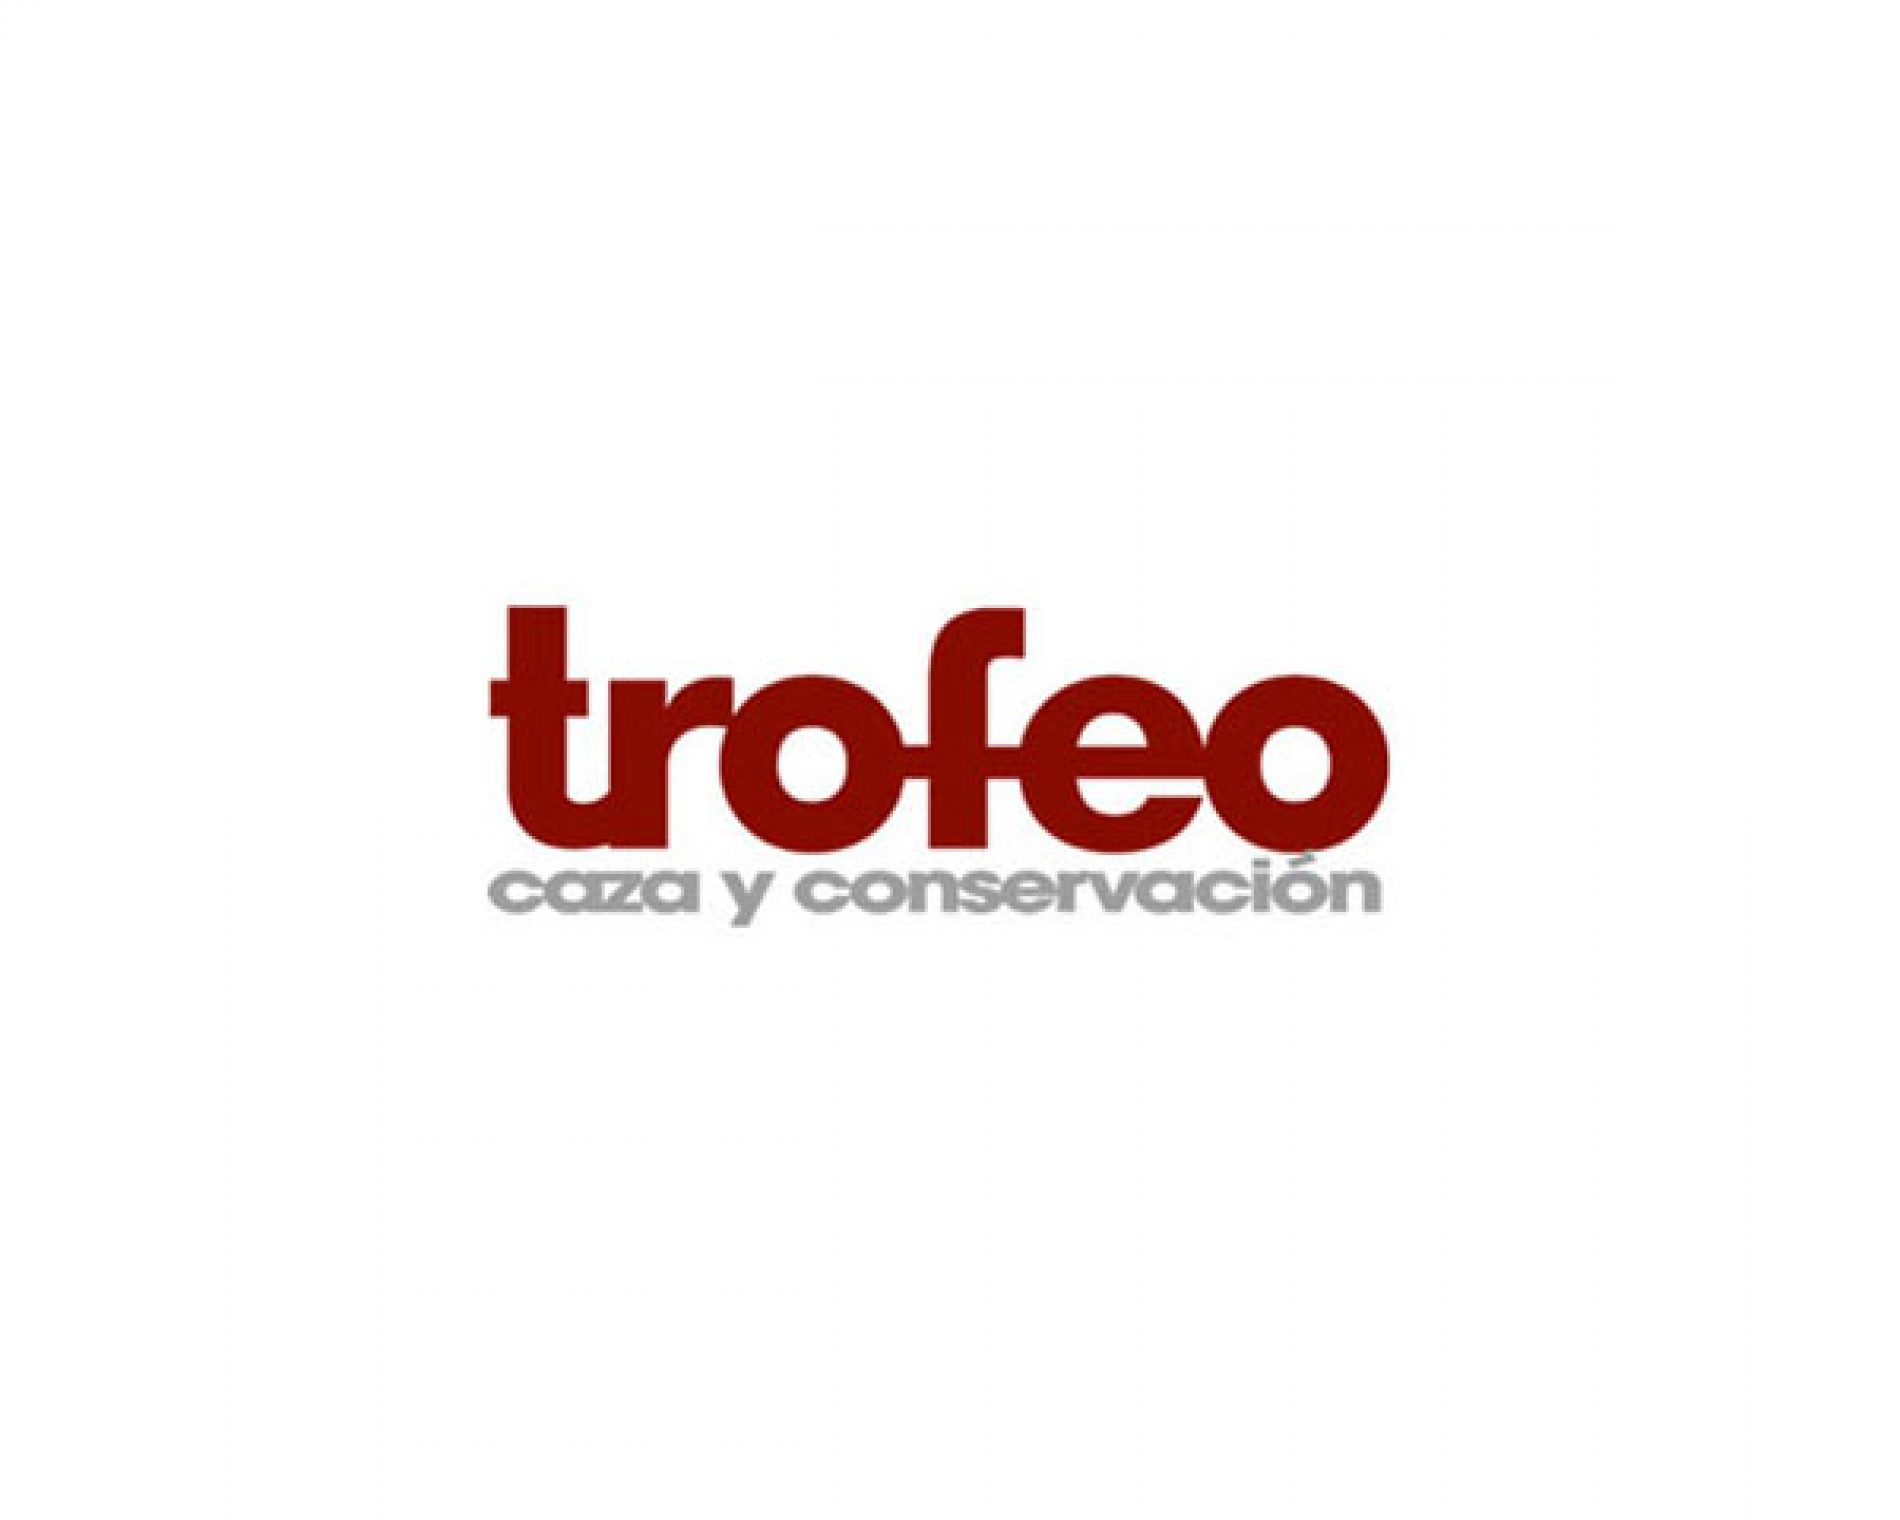 La ONC impulsará un estudio que demostrará la importancia de caza en la conservación de la naturaleza y la economía en España